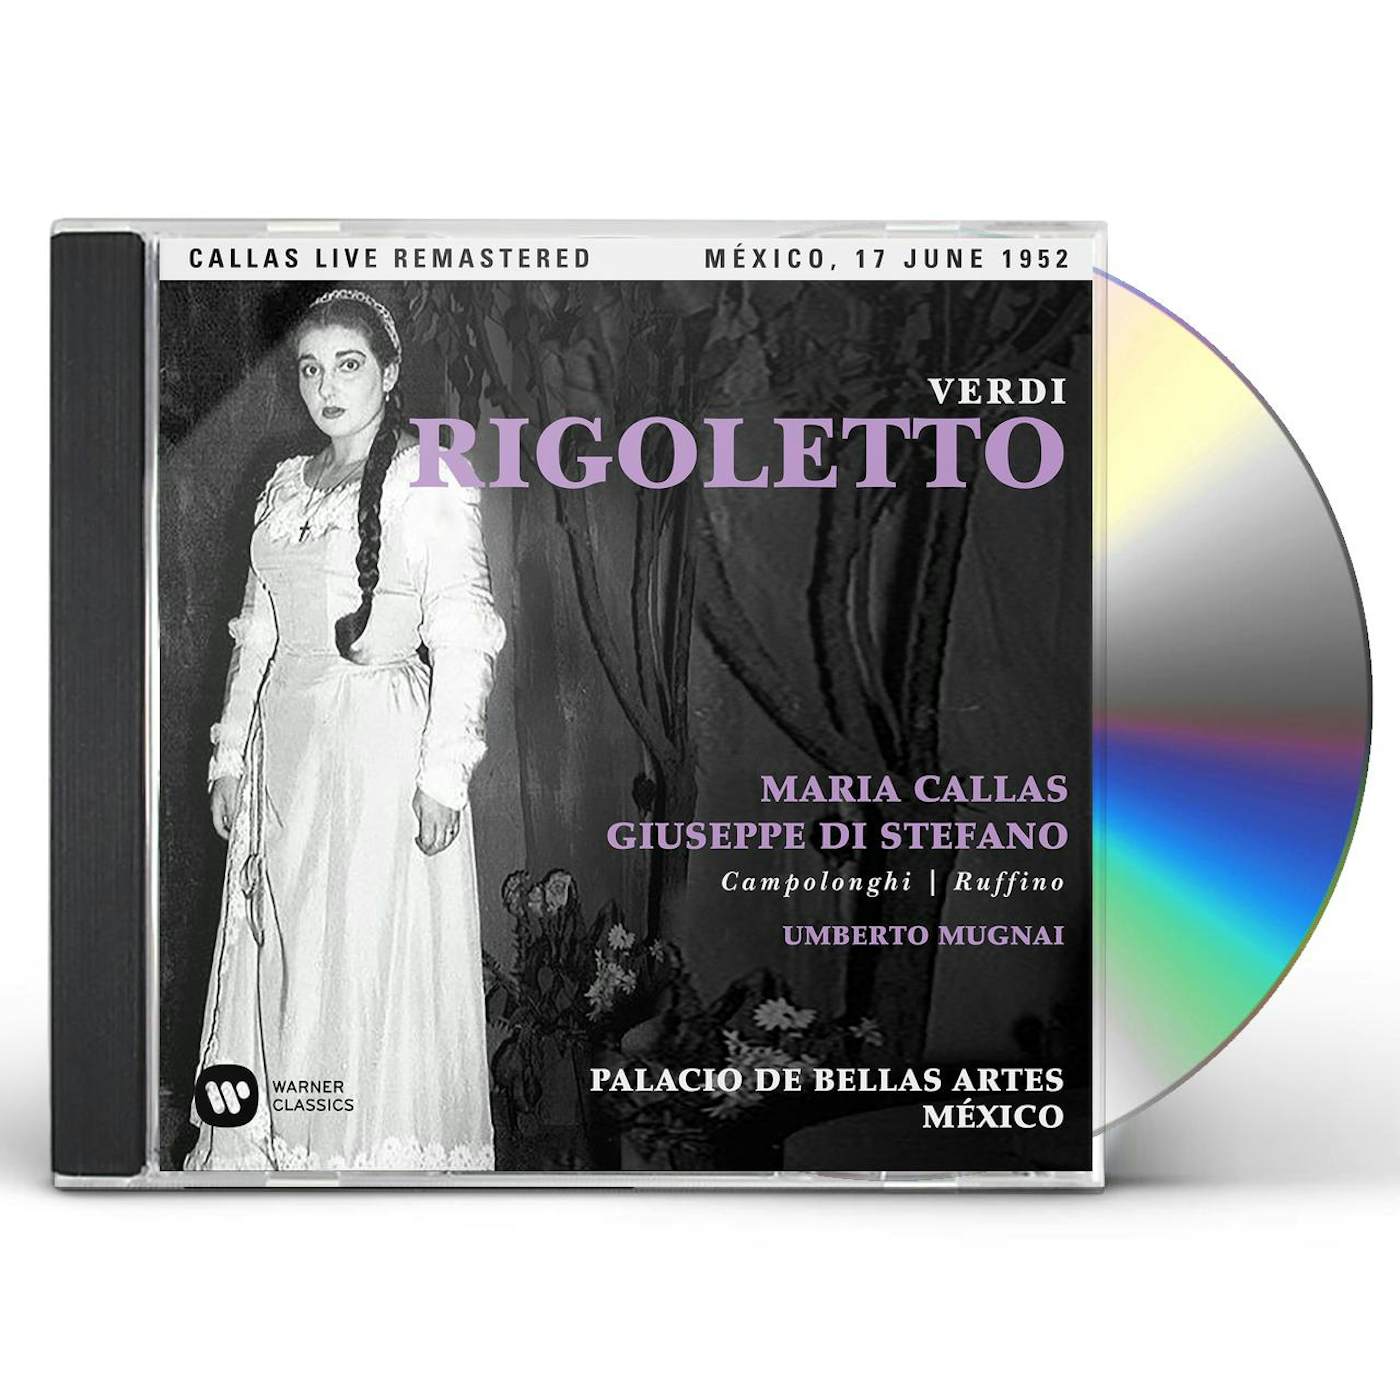 Maria Callas VERDI: RIGOLETTO (MEXICO 17/06/1952) CD